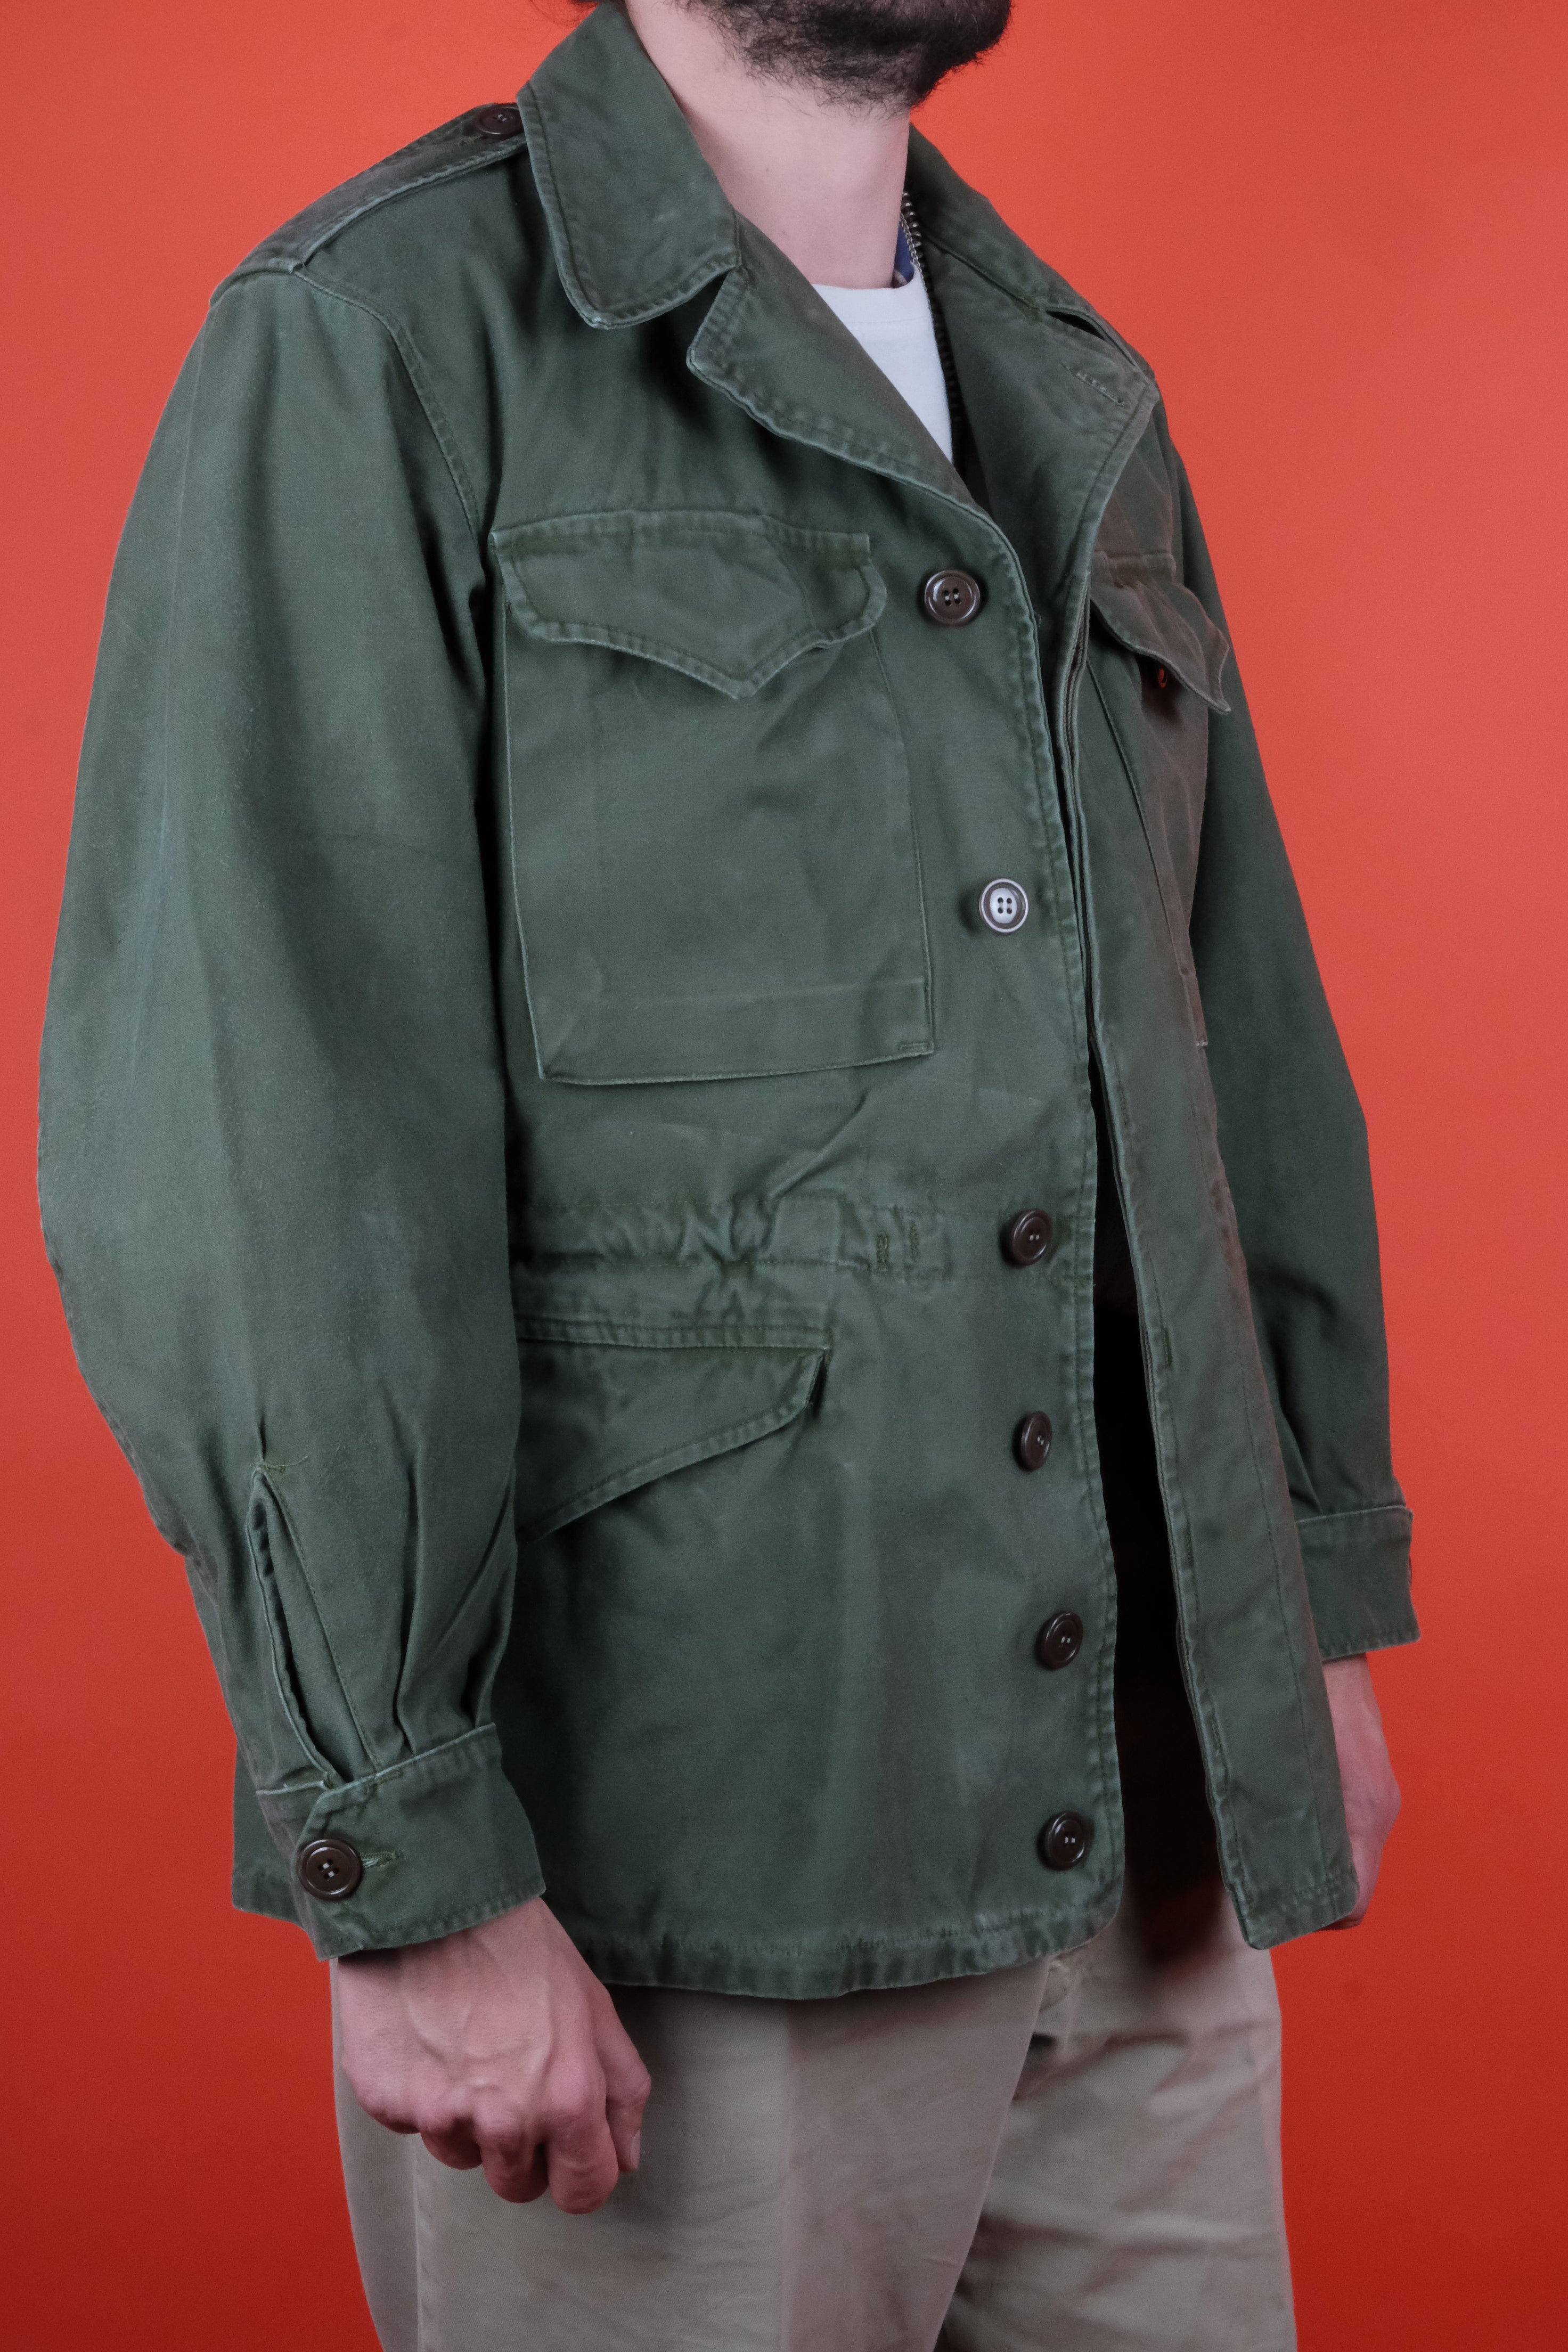 Vintage Military Jackets for Men ~ Clochard92.com